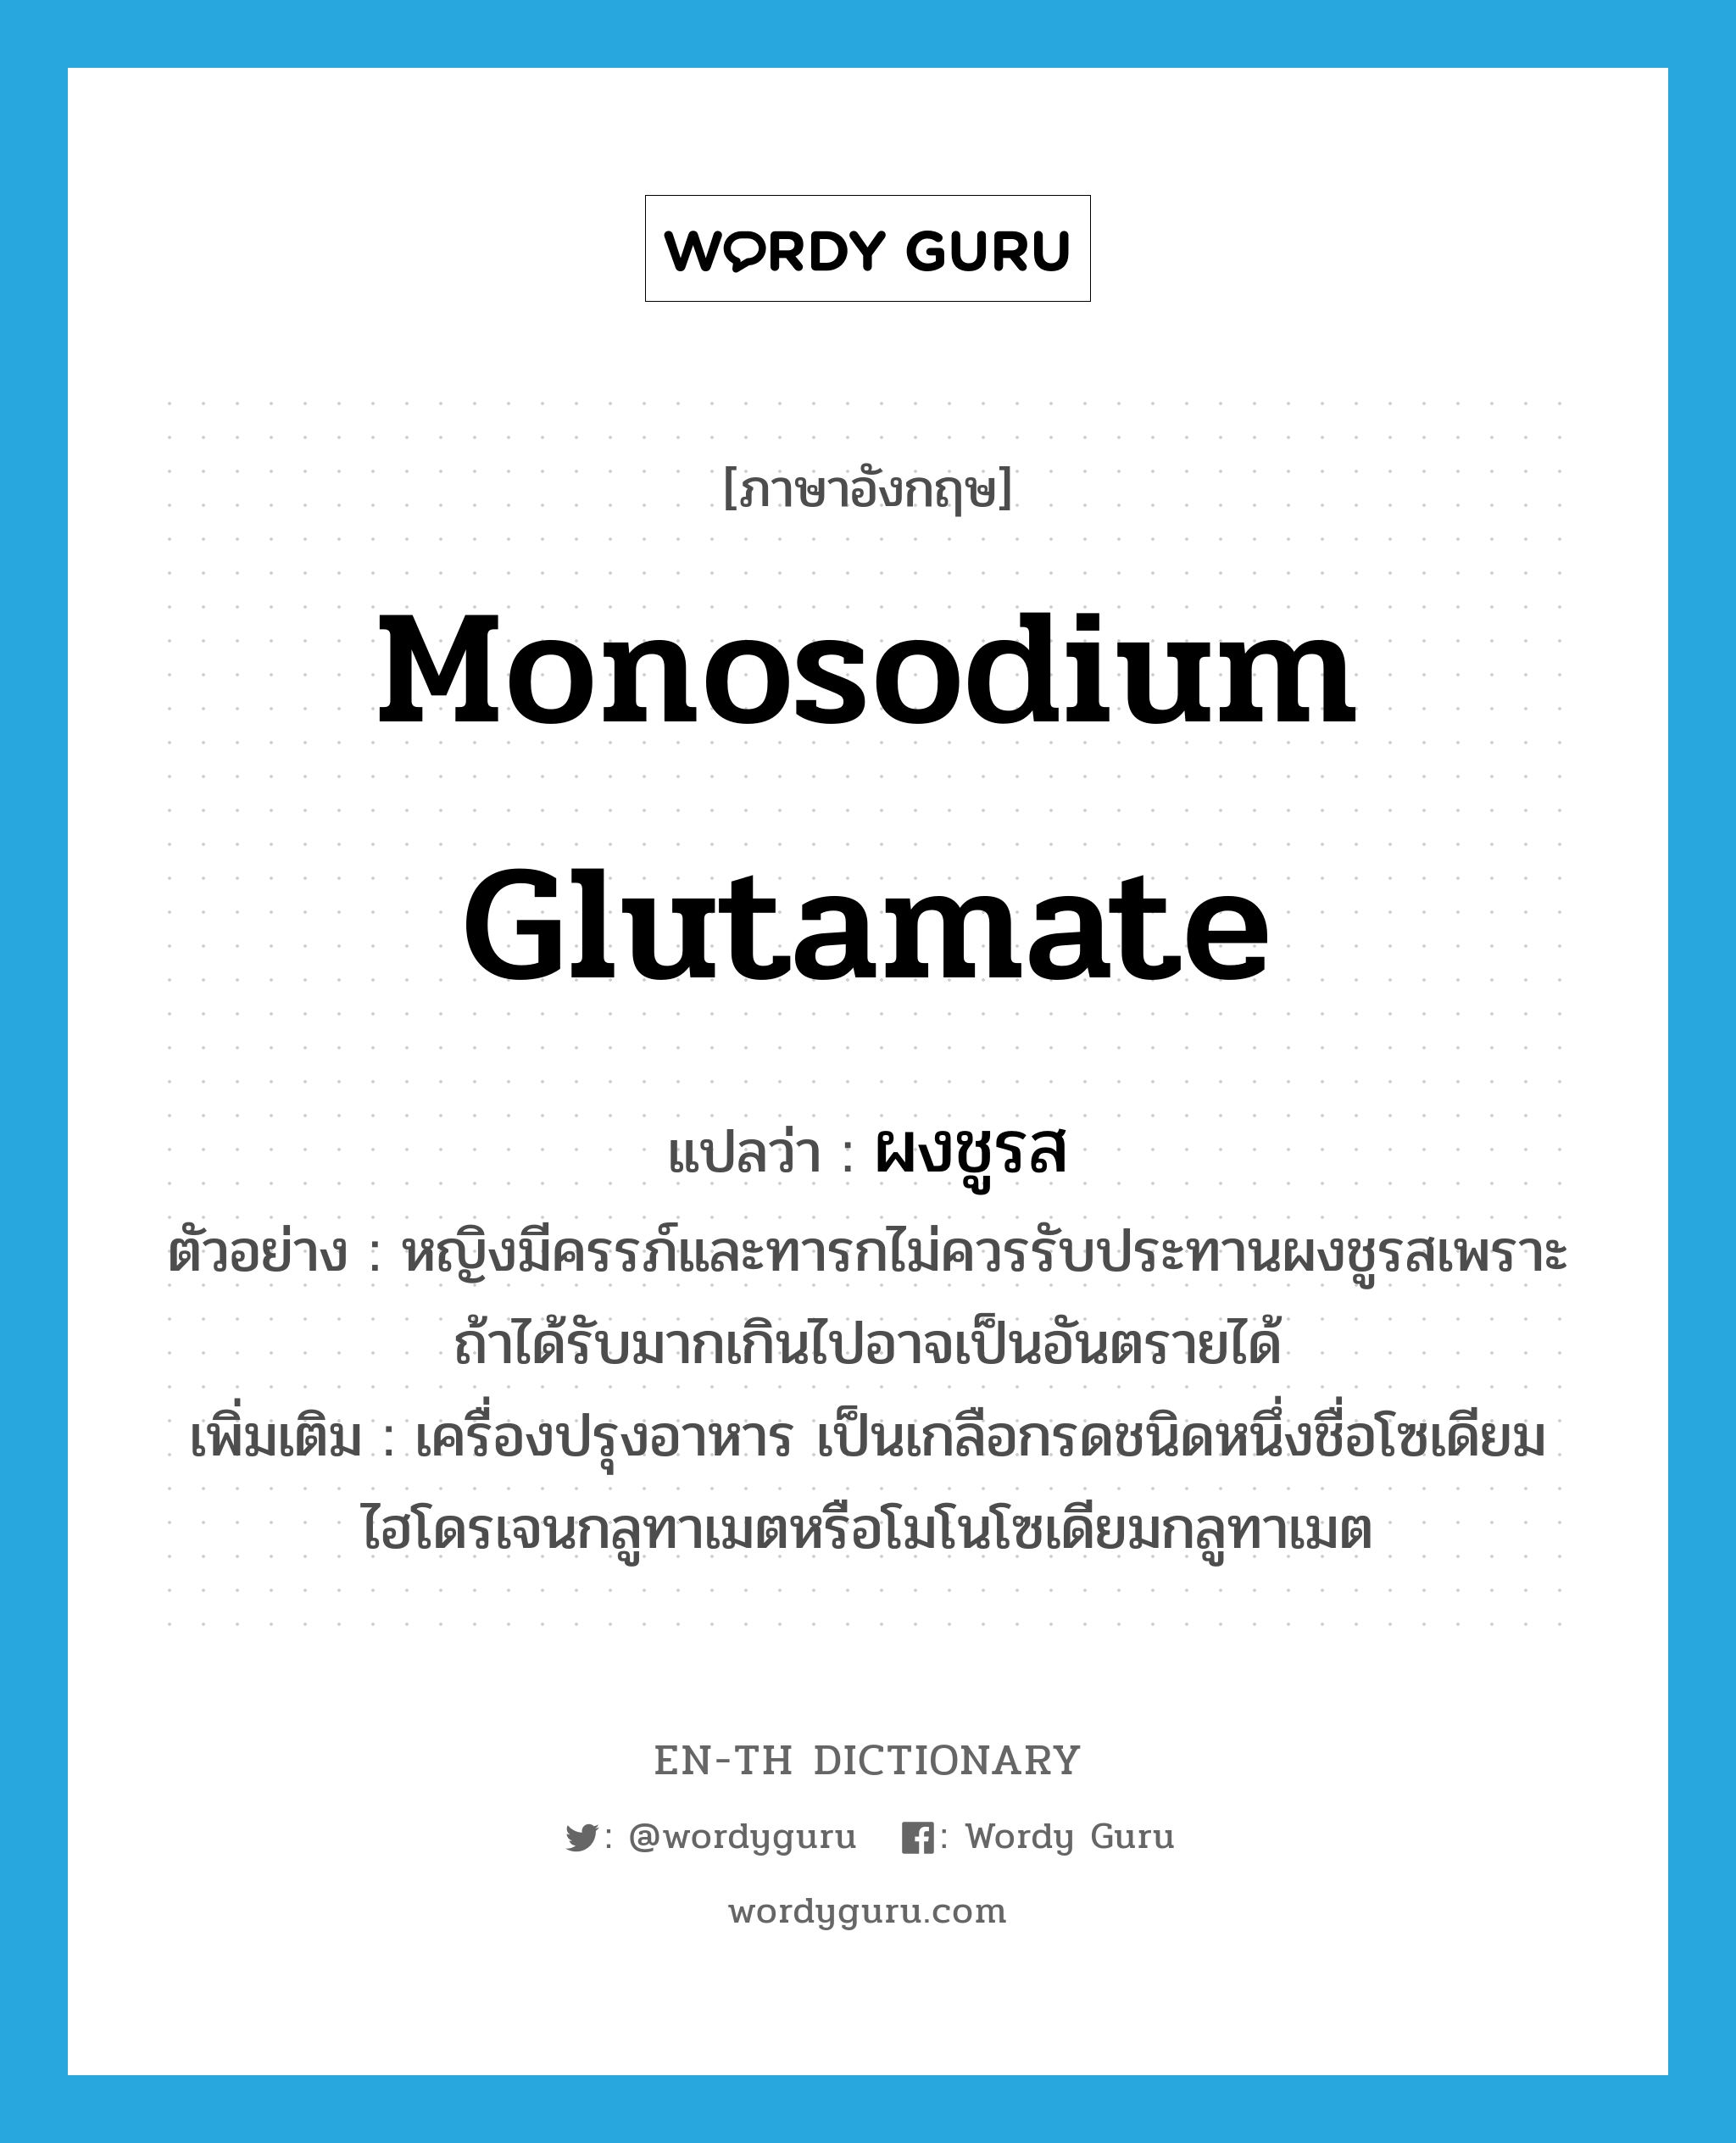 monosodium glutamate แปลว่า?, คำศัพท์ภาษาอังกฤษ monosodium glutamate แปลว่า ผงชูรส ประเภท N ตัวอย่าง หญิงมีครรภ์และทารกไม่ควรรับประทานผงชูรสเพราะถ้าได้รับมากเกินไปอาจเป็นอันตรายได้ เพิ่มเติม เครื่องปรุงอาหาร เป็นเกลือกรดชนิดหนึ่งชื่อโซเดียมไฮโดรเจนกลูทาเมตหรือโมโนโซเดียมกลูทาเมต หมวด N